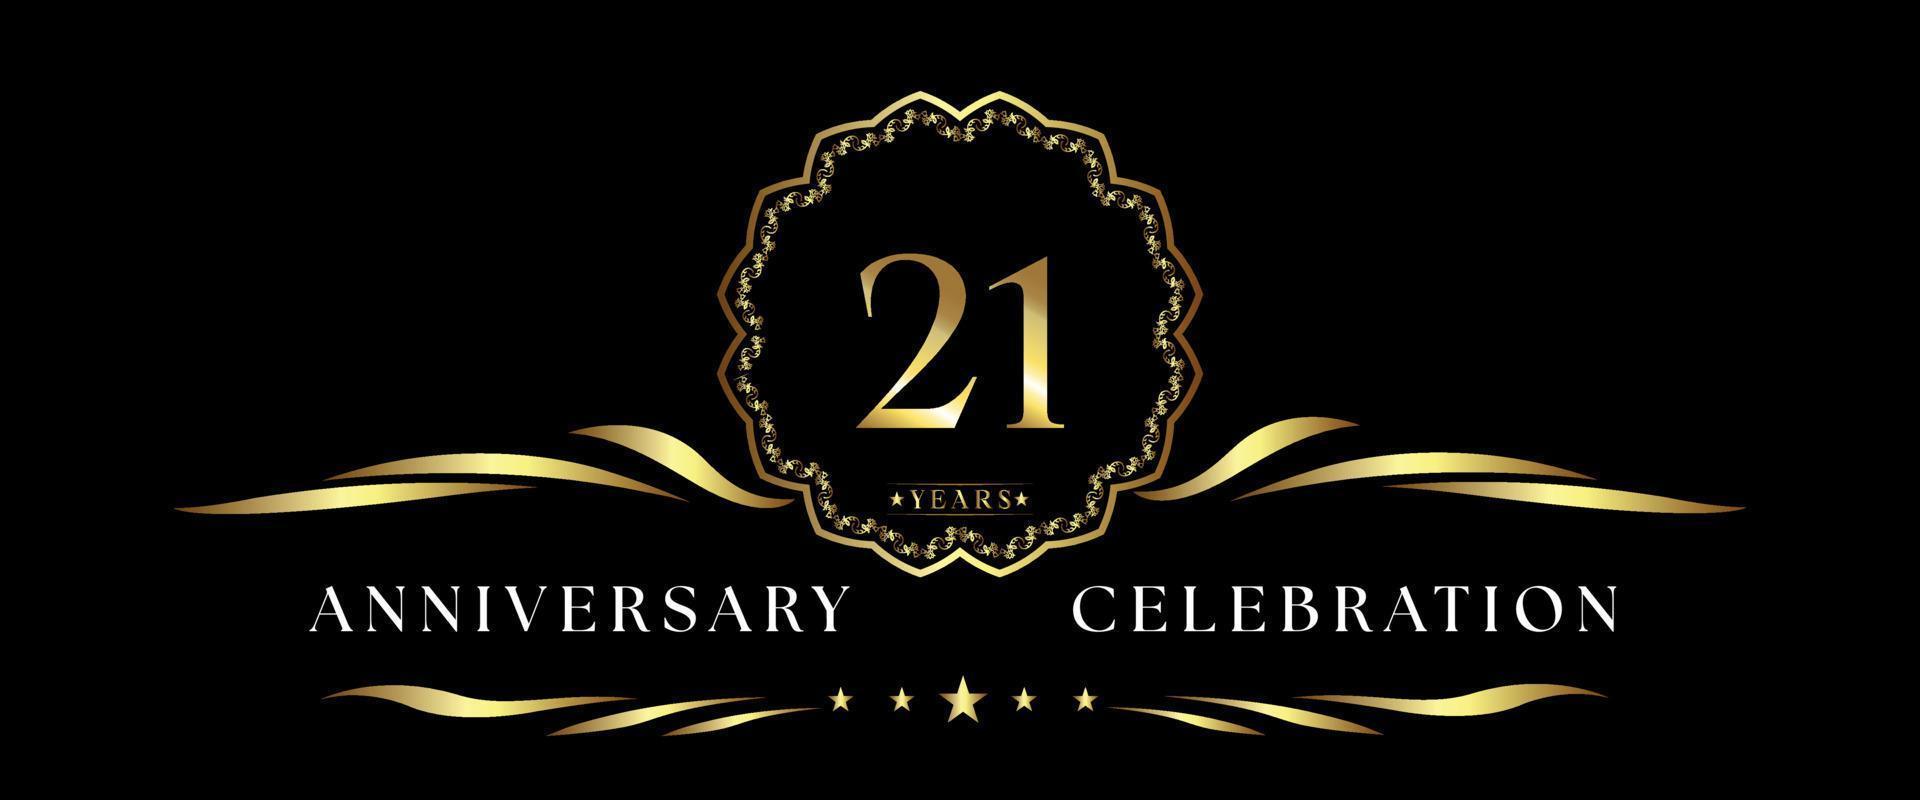 Celebración del aniversario de 21 años con marco decorativo dorado aislado en fondo negro. diseño vectorial para tarjetas de felicitación, fiesta de cumpleaños, boda, fiesta de eventos, ceremonia. Logotipo de aniversario de 21 años. vector